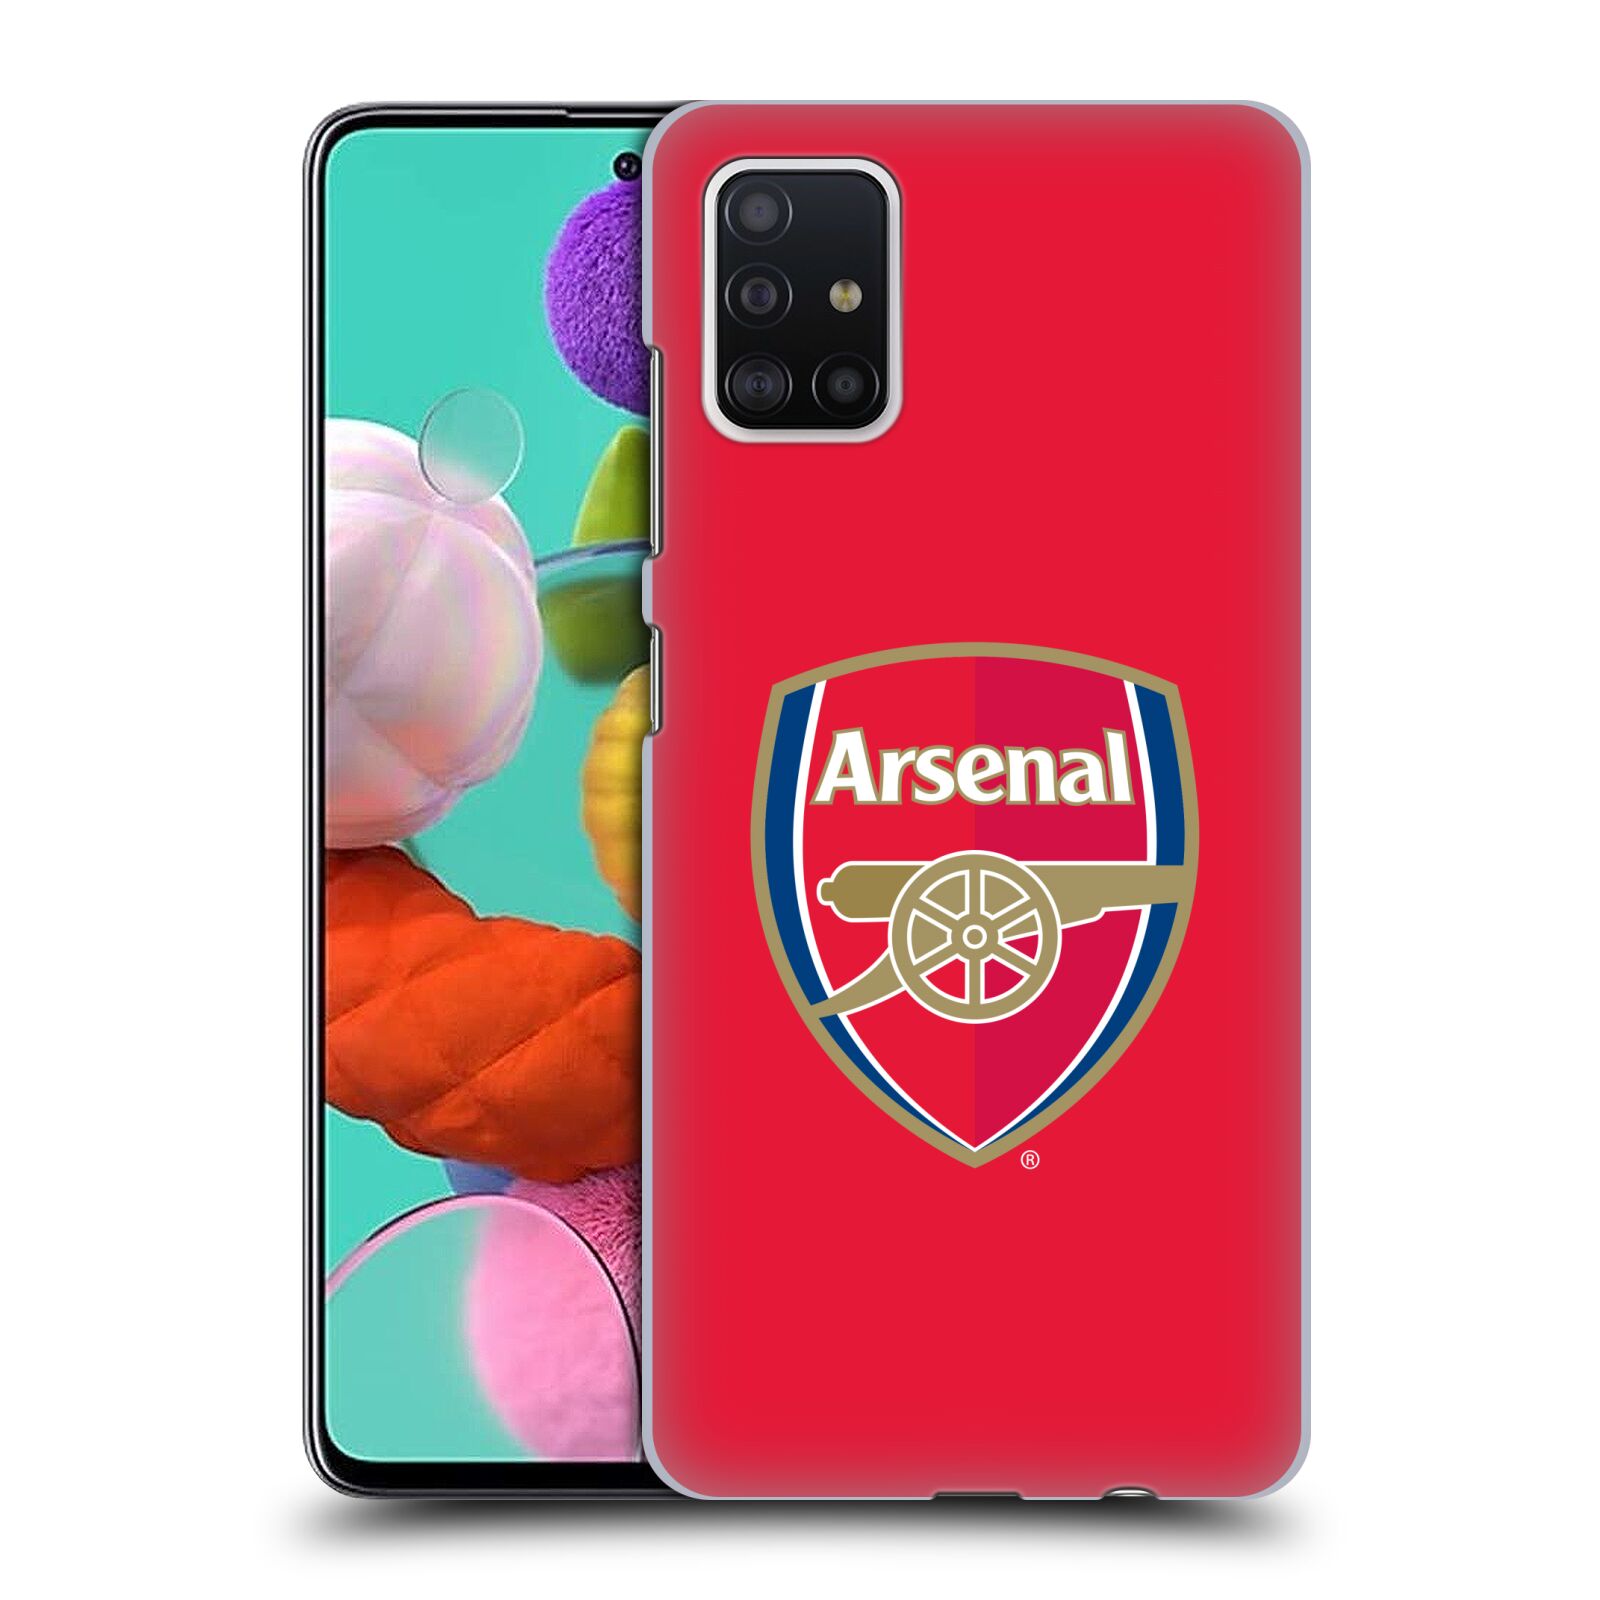 Zadní obal pro mobil Samsung Galaxy A51 - HEAD CASE - Fotbal - Arsenal červená